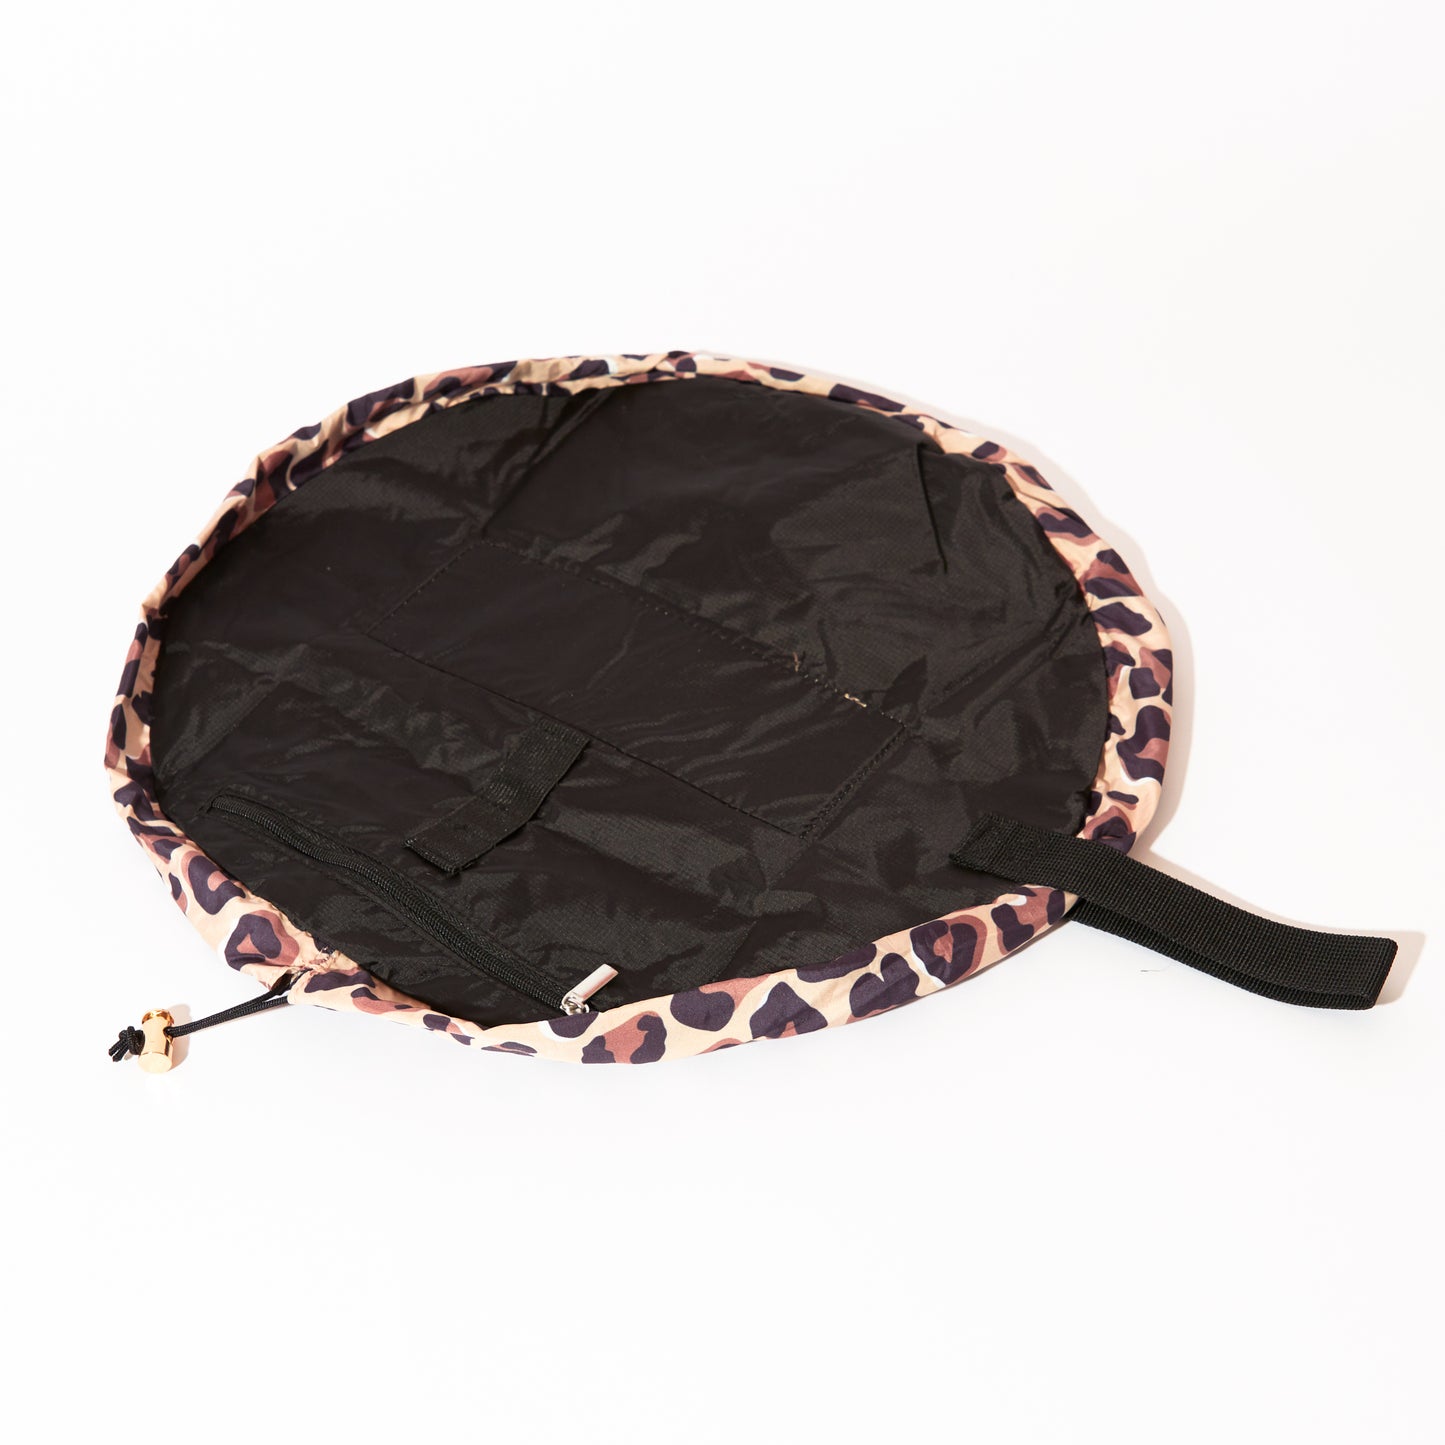 Mini Open Flat Makeup Bag Leopard